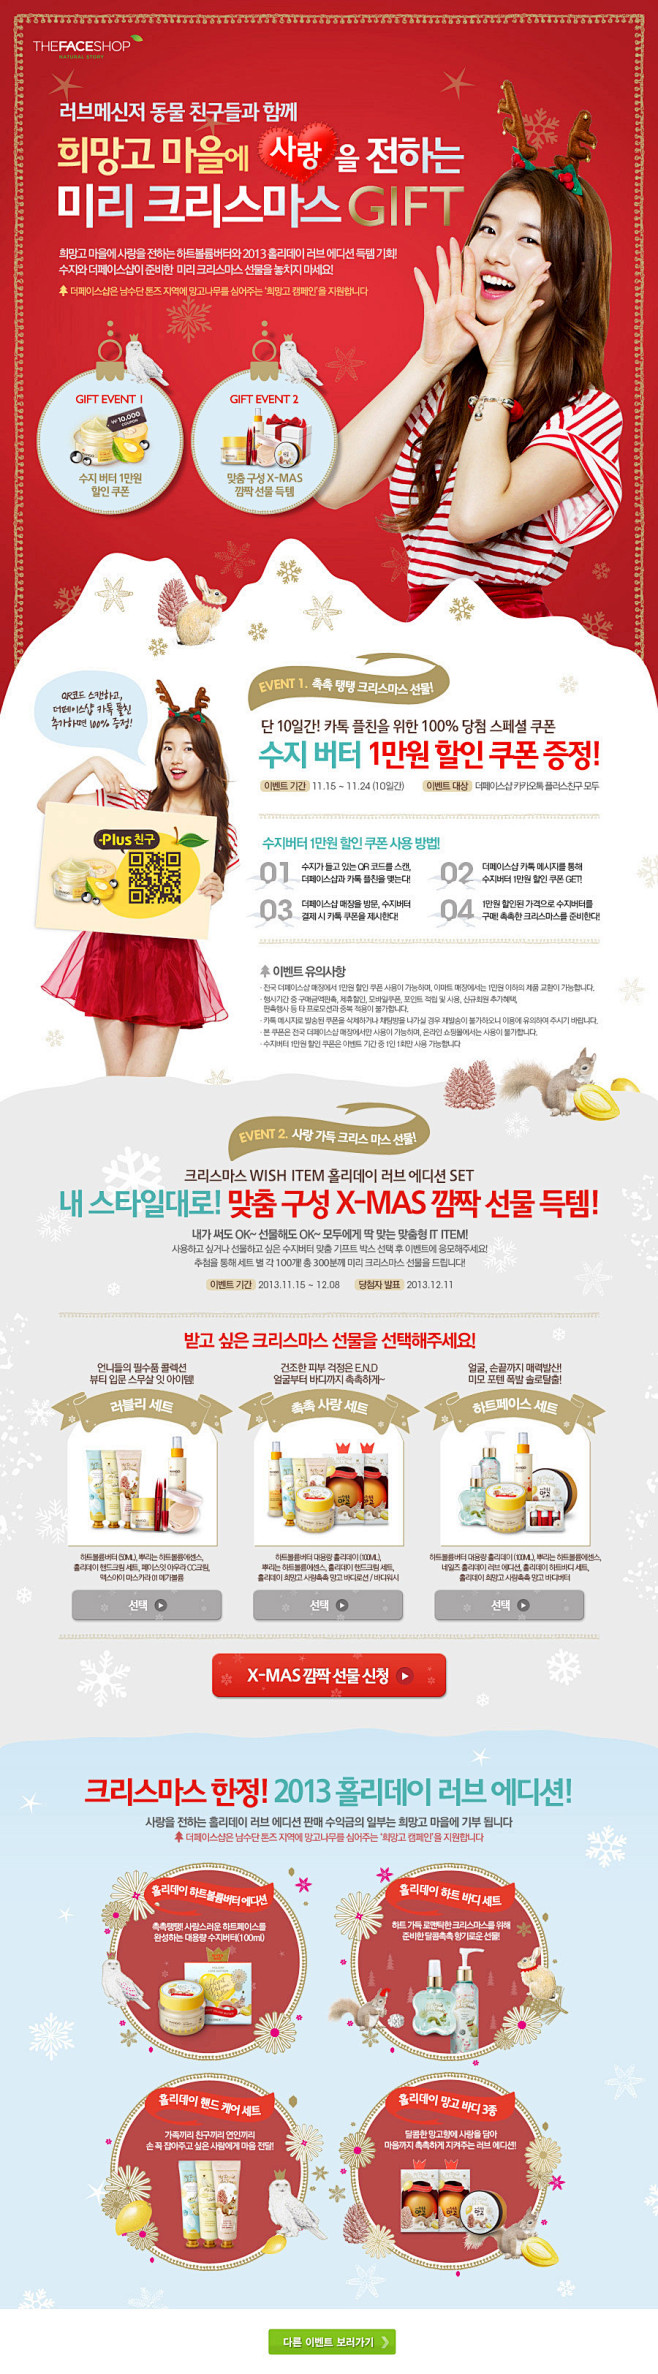 韩国美少女购物网站贺圣诞.jpg